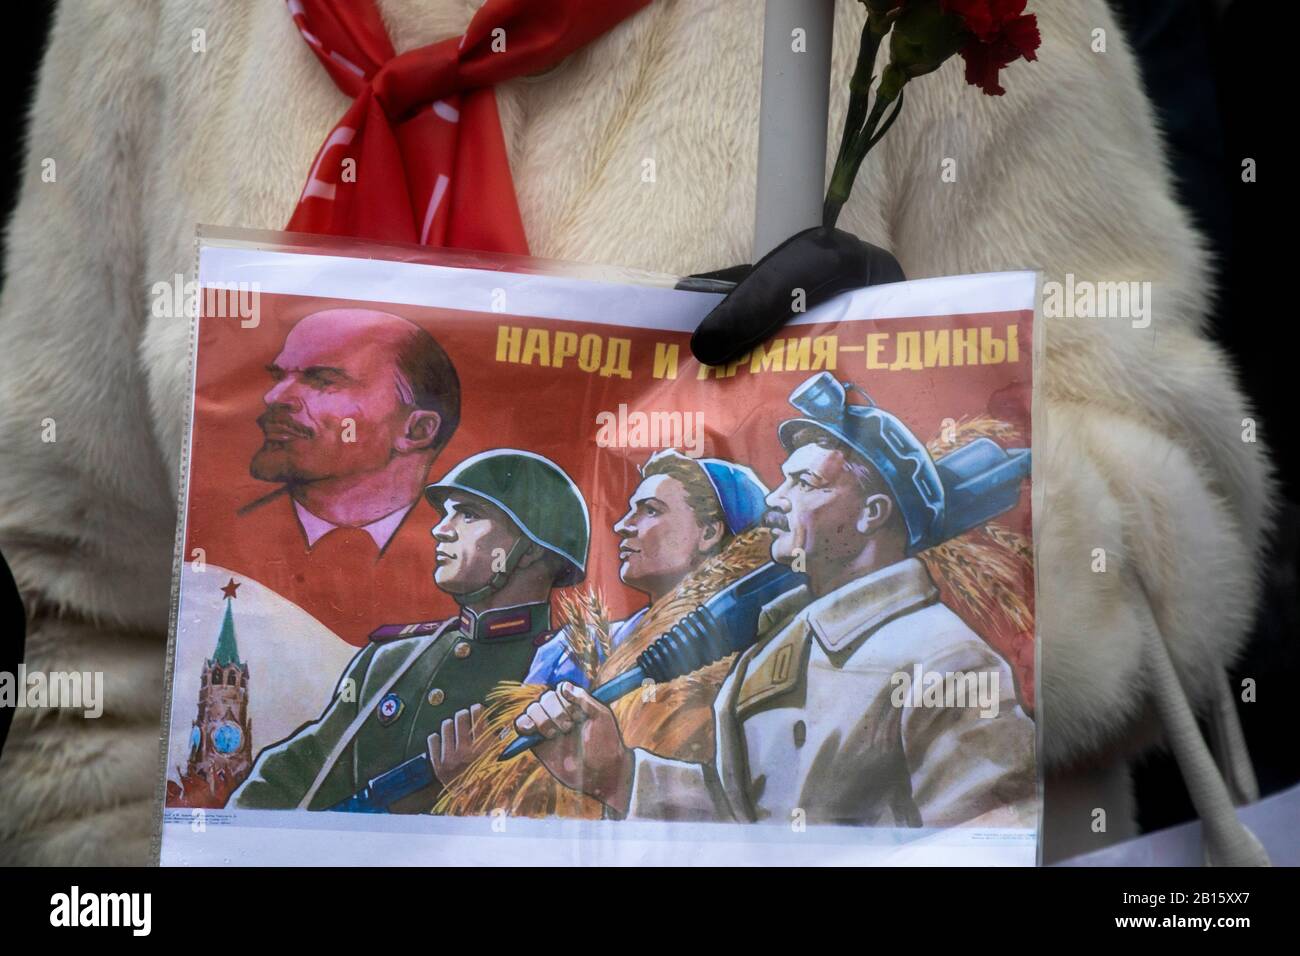 Moskau, Russland. Februar 2020 Teilnehmer einer Kundgebung und eines marsches in Zentral-Moskau anlässlich des 102. Jahrestages der Gründung der sowjetischen Roten Armee und der sowjetischen Marine. Eine Frau hält Plakat mit der sowjetischen Propaganda, die dem Tag der sowjetischen Armee gewidmet ist, mit der Aufschrift auf Russisch "Volk und Armee sind vereint" Stockfoto